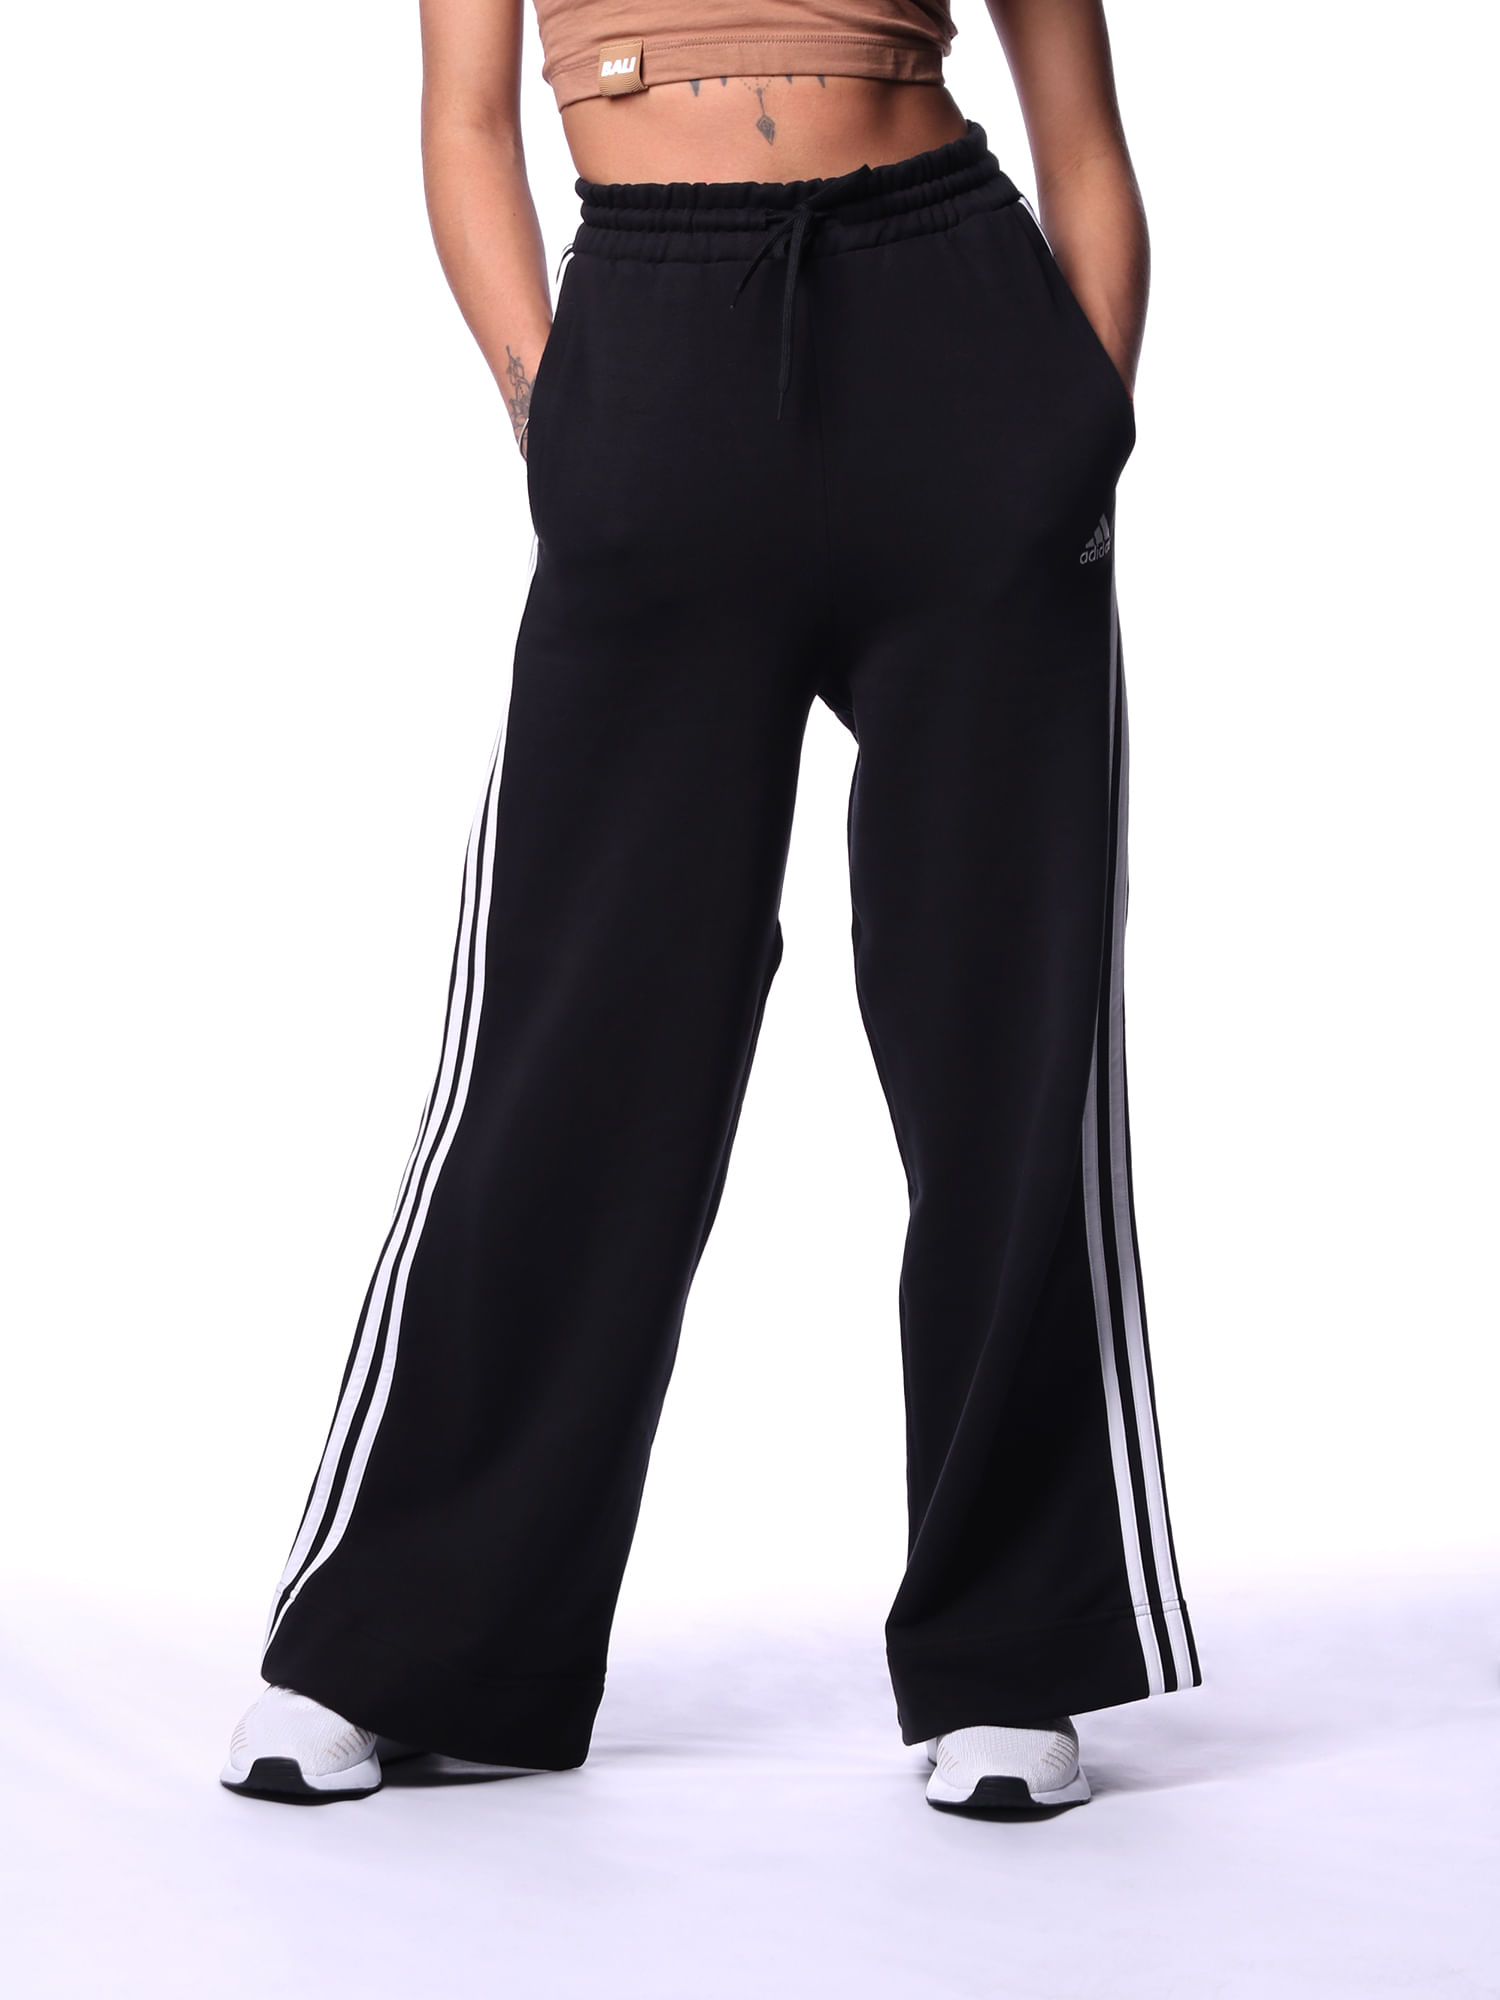 Calça moletinho jogger feminina adidas essentials 3 stripes - BaliShoes